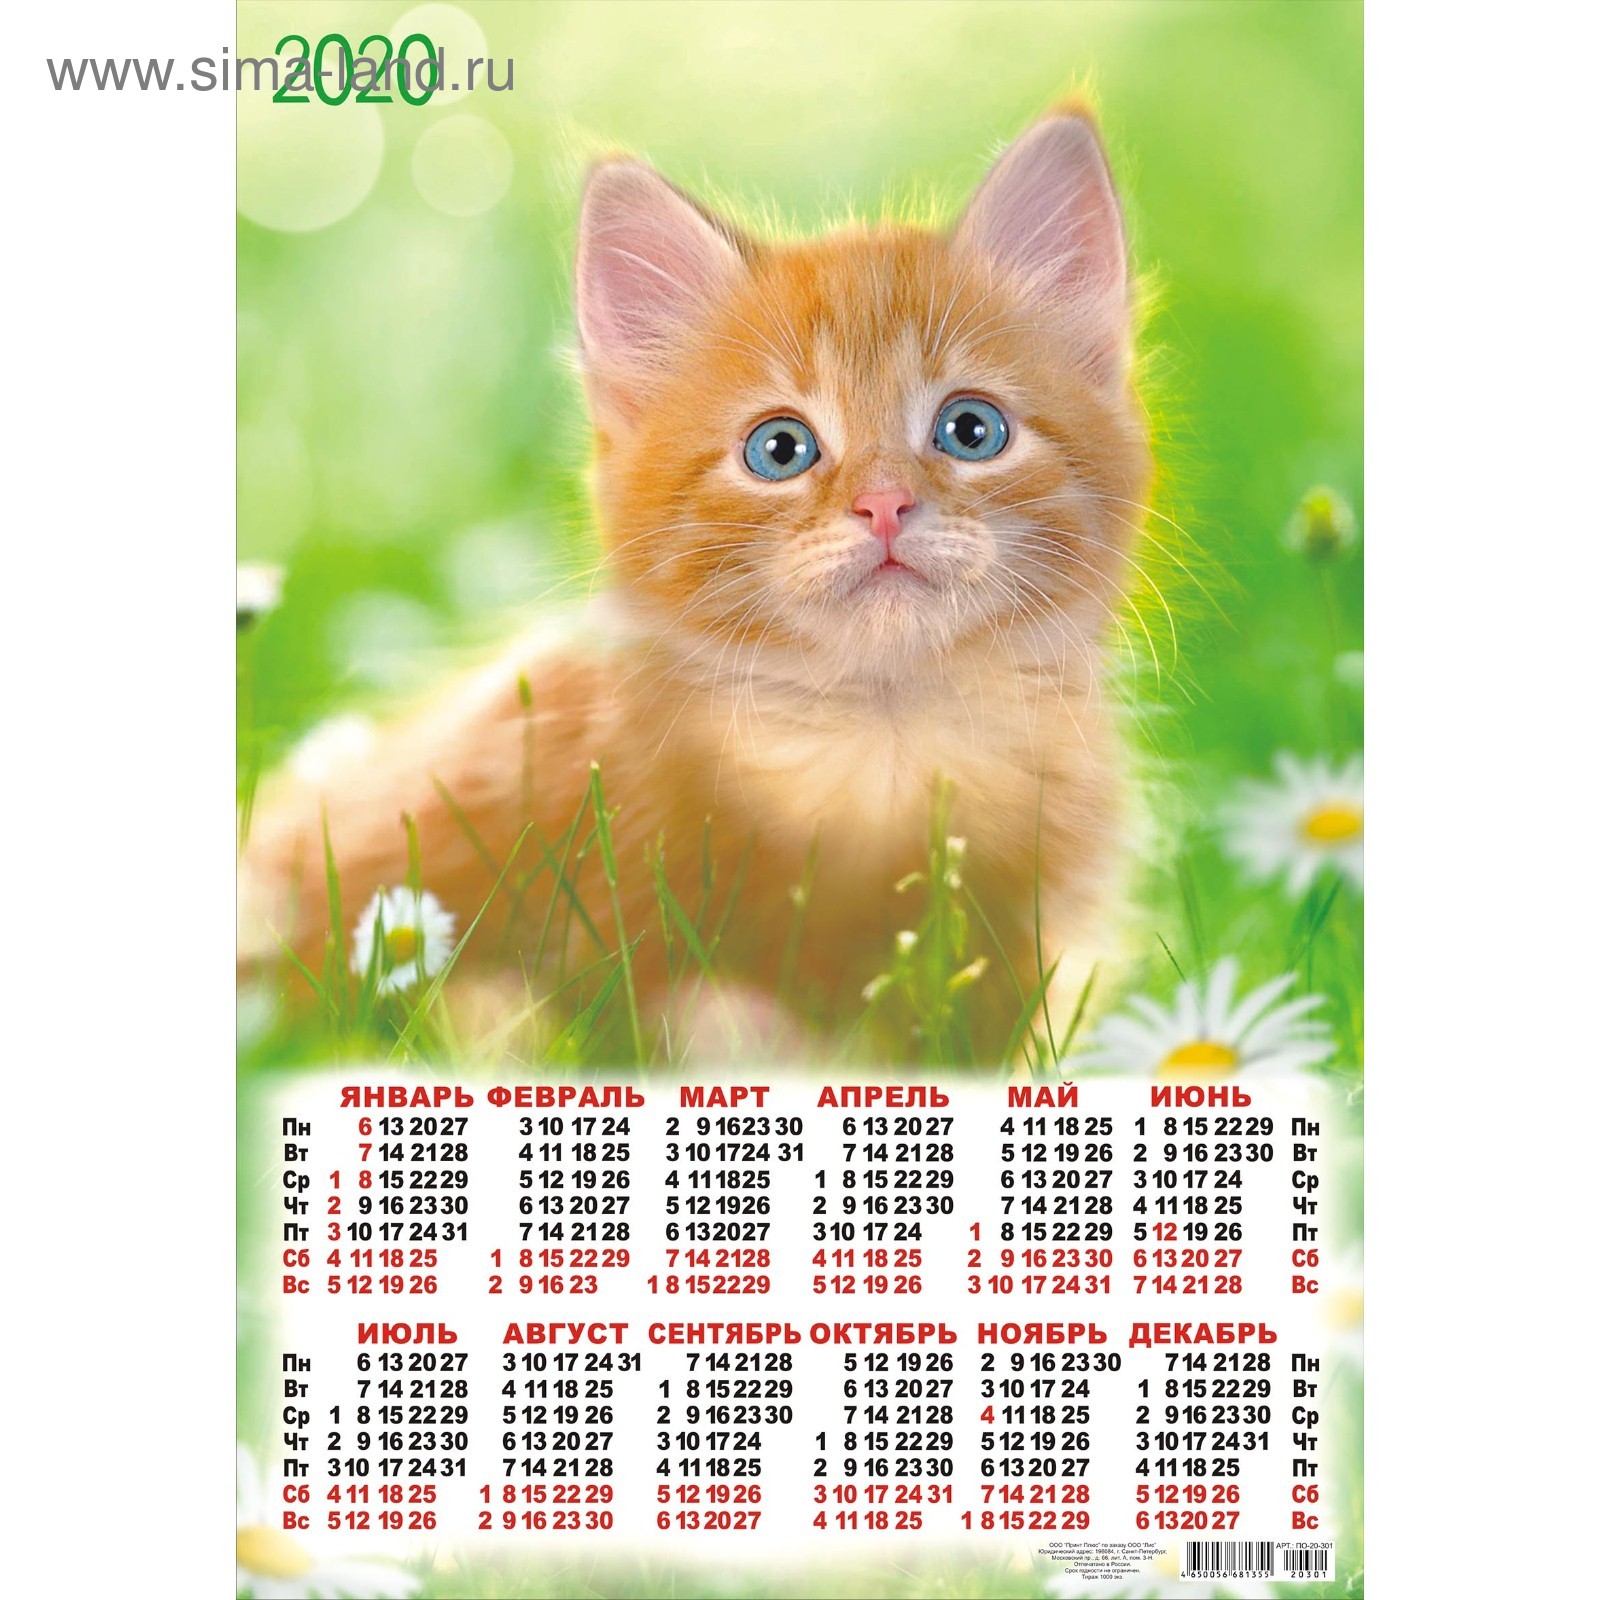 СПЕЦЦЕНА Календарь листовой А2 Кошки - 2020 - 1 (4341199) - Купить по  цене от 7.30 руб. | Интернет магазин SIMA-LAND.RU